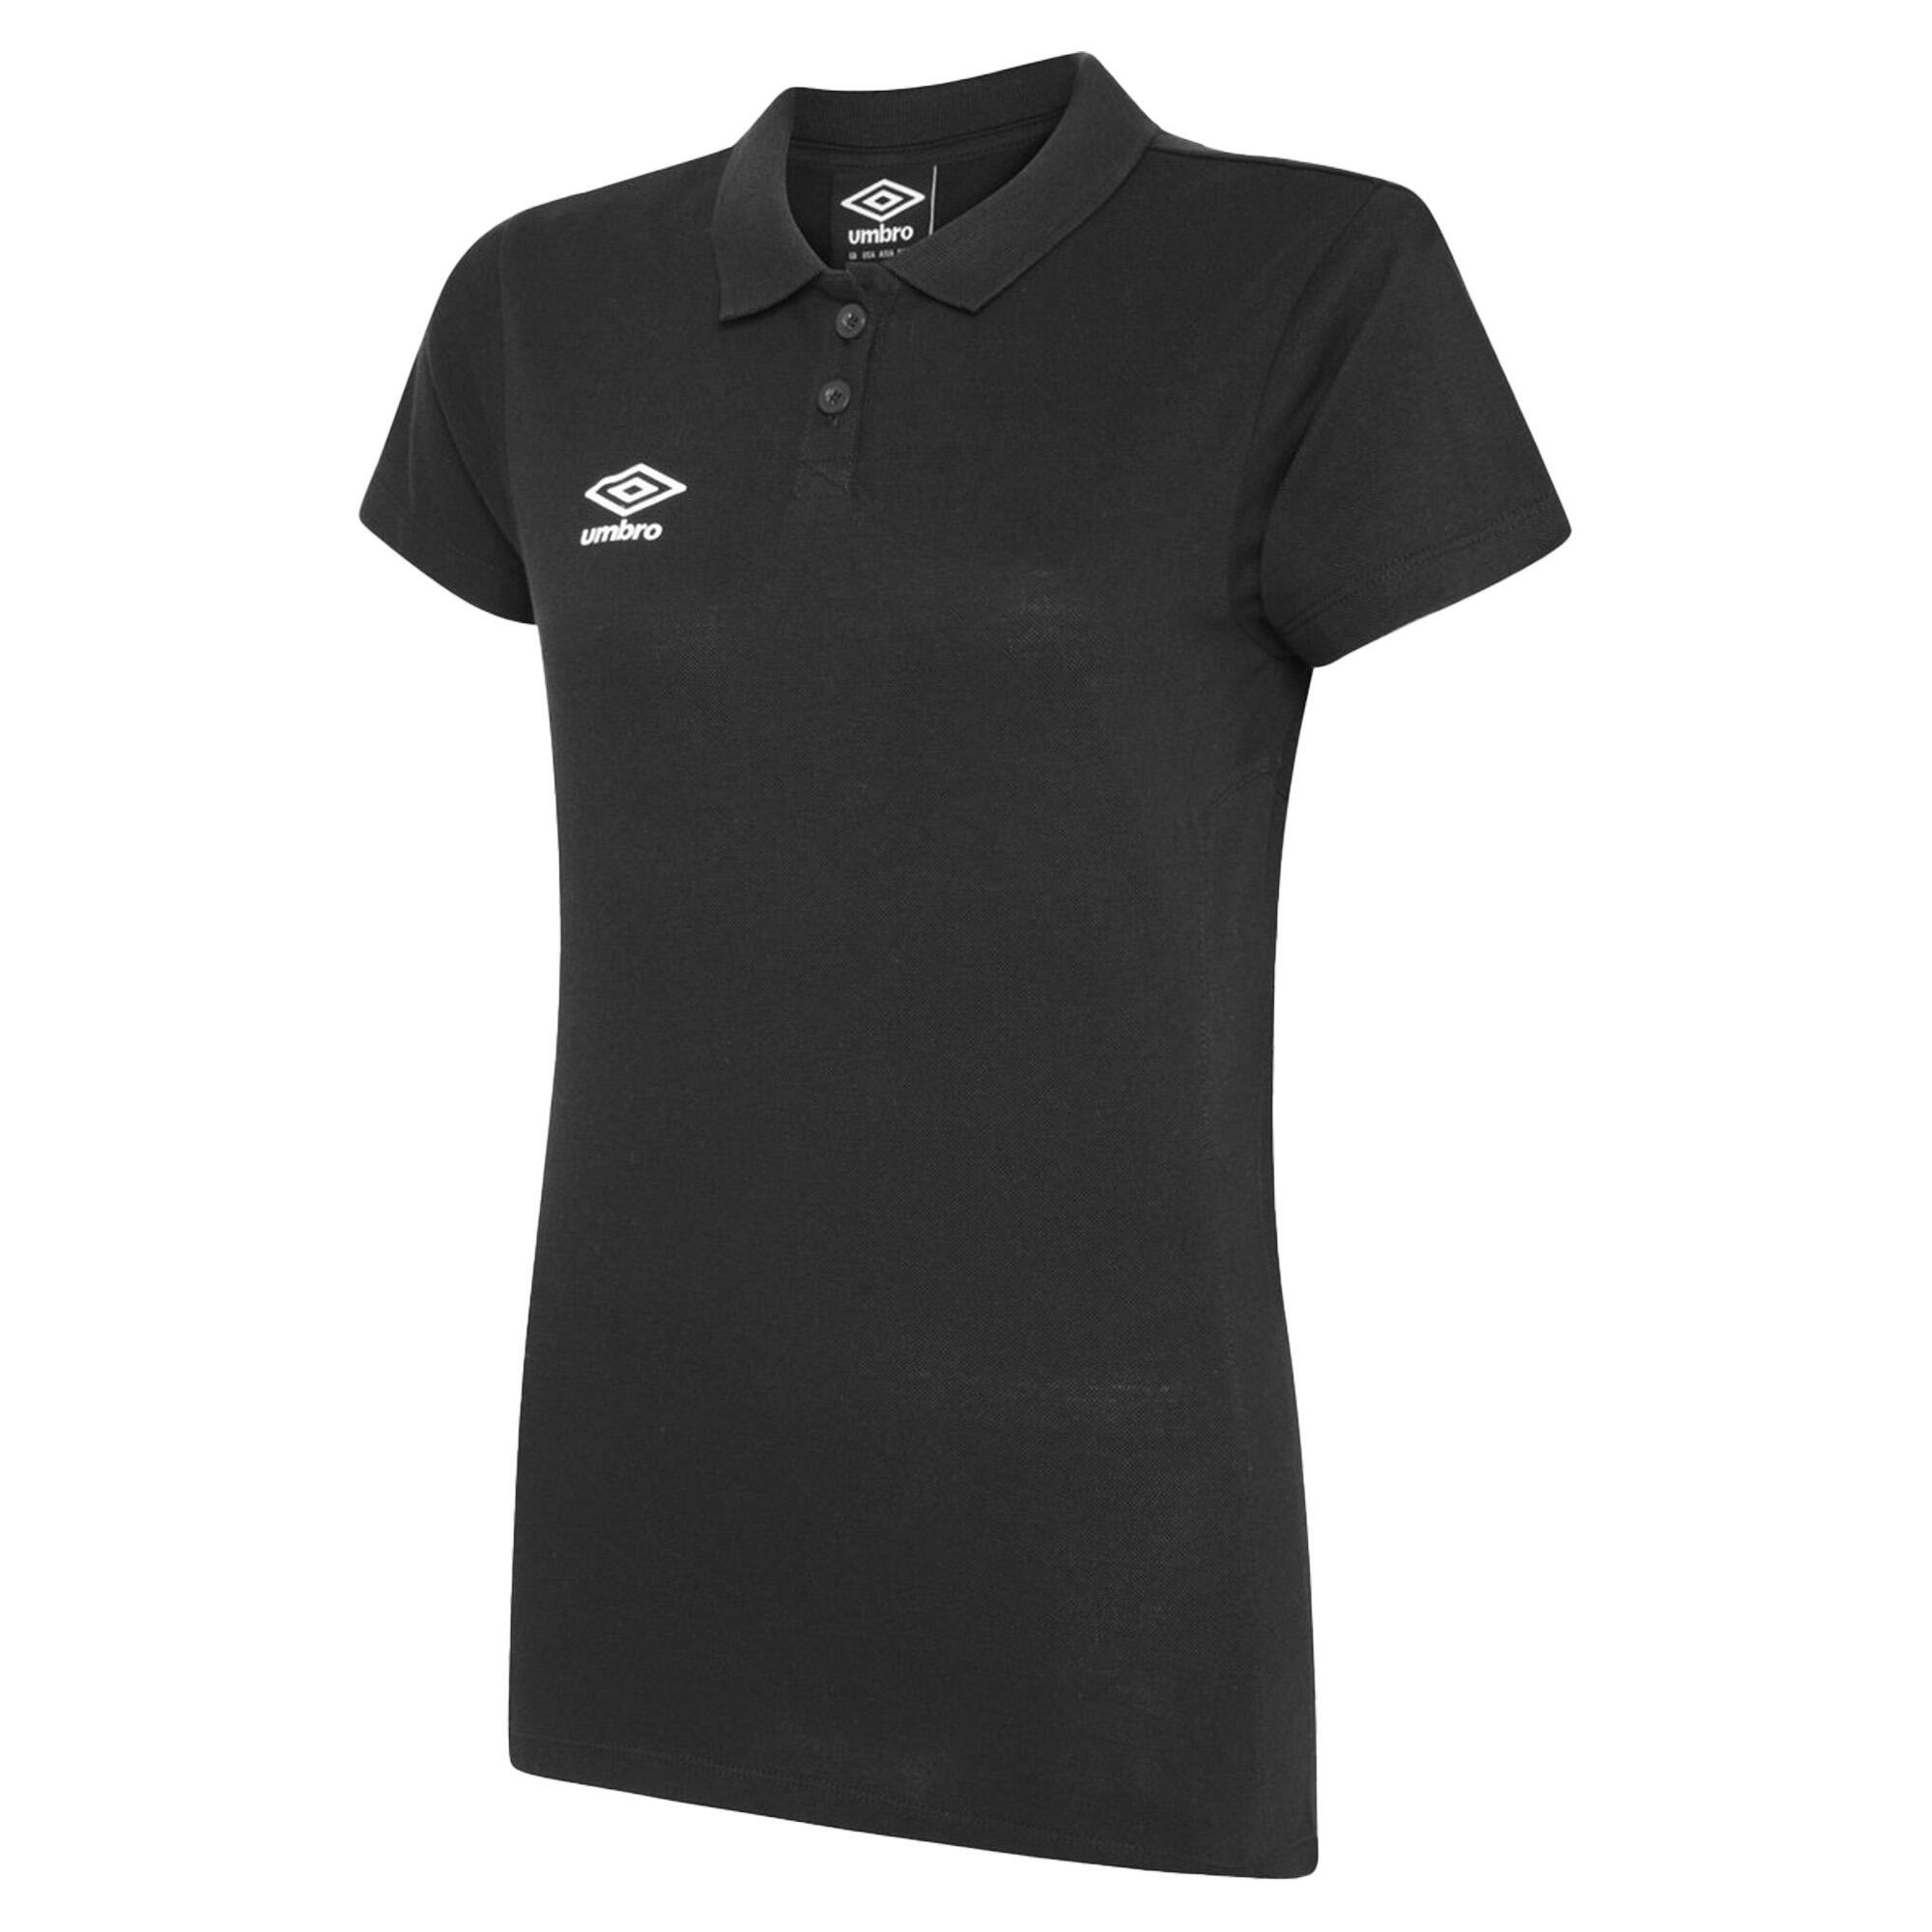 UMBRO Womens/Ladies Club Essential Polo Shirt (Carbon/White)